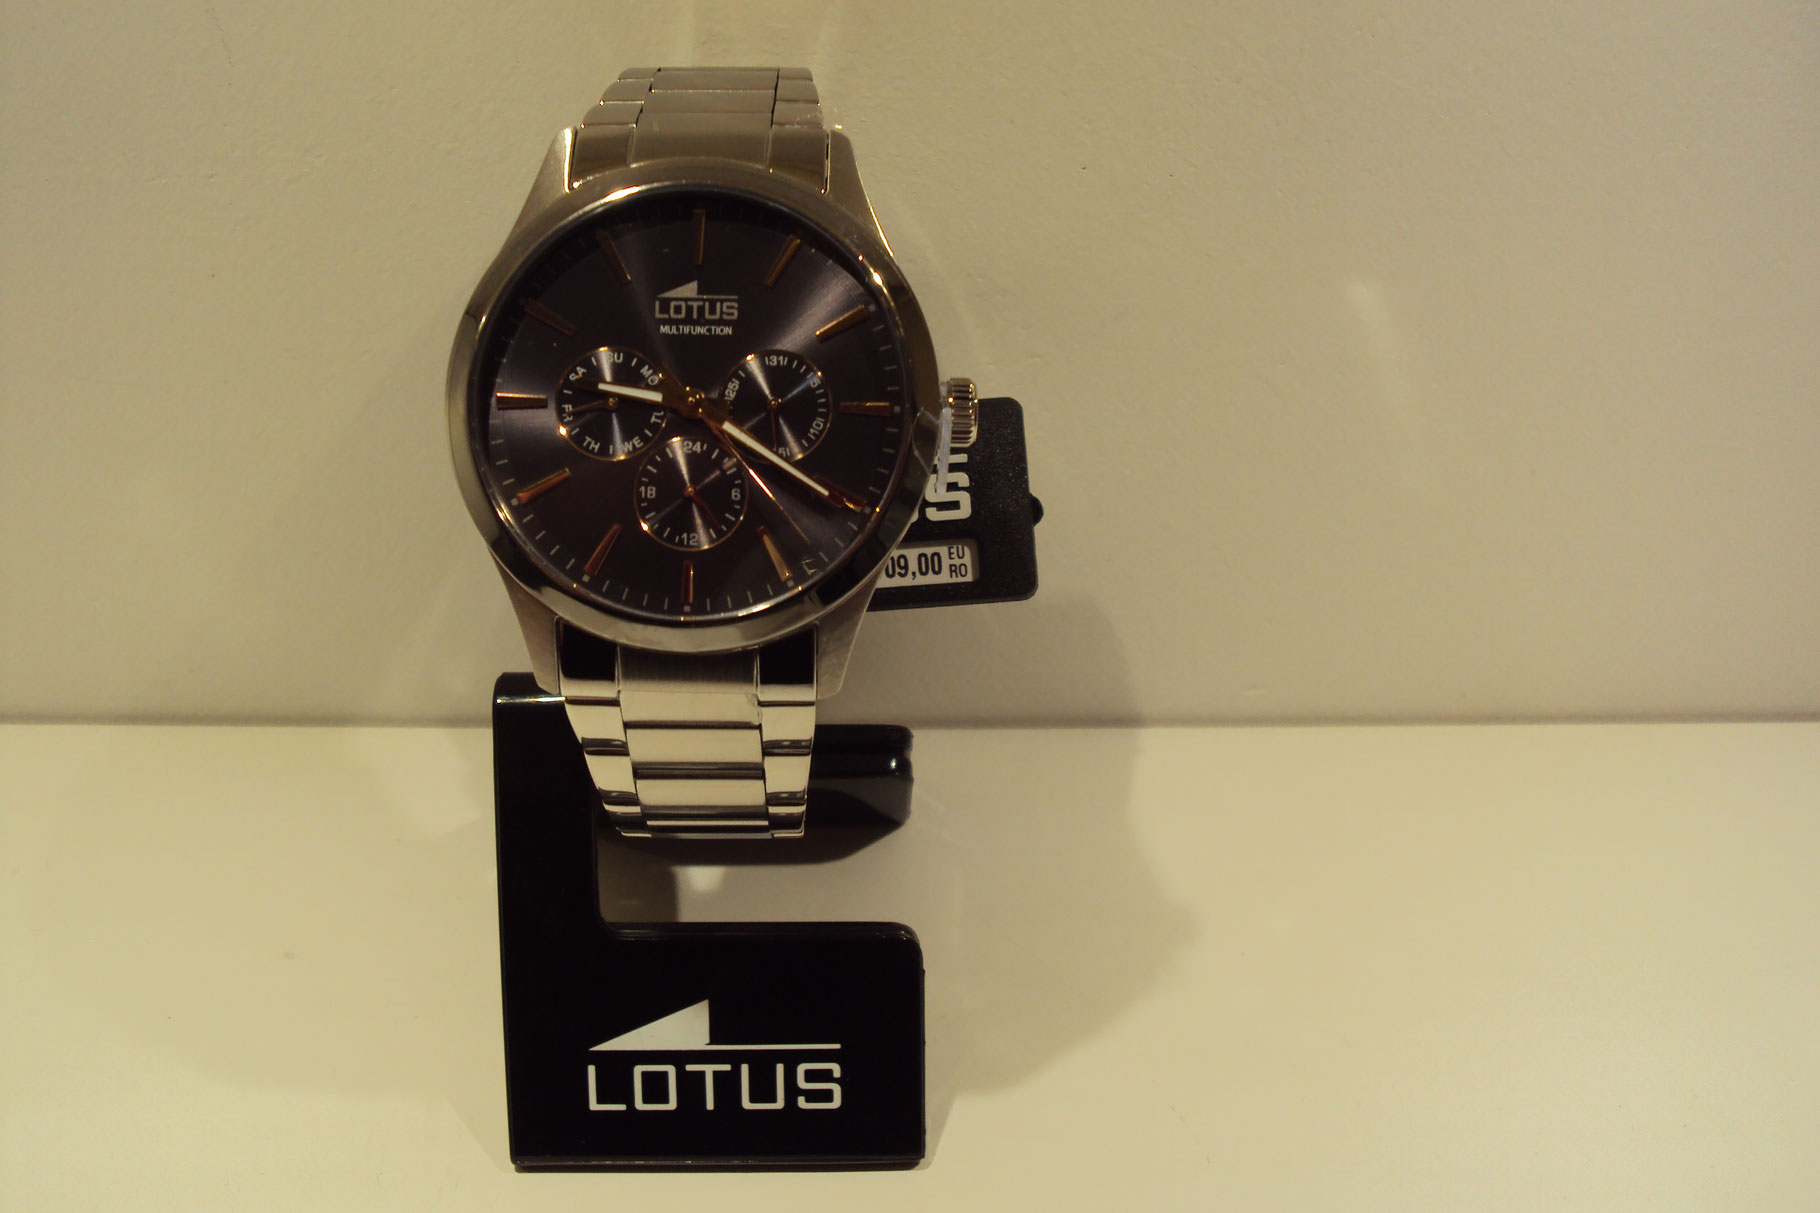 Reloj Lotus caballero multifunción esfera oscura.109€